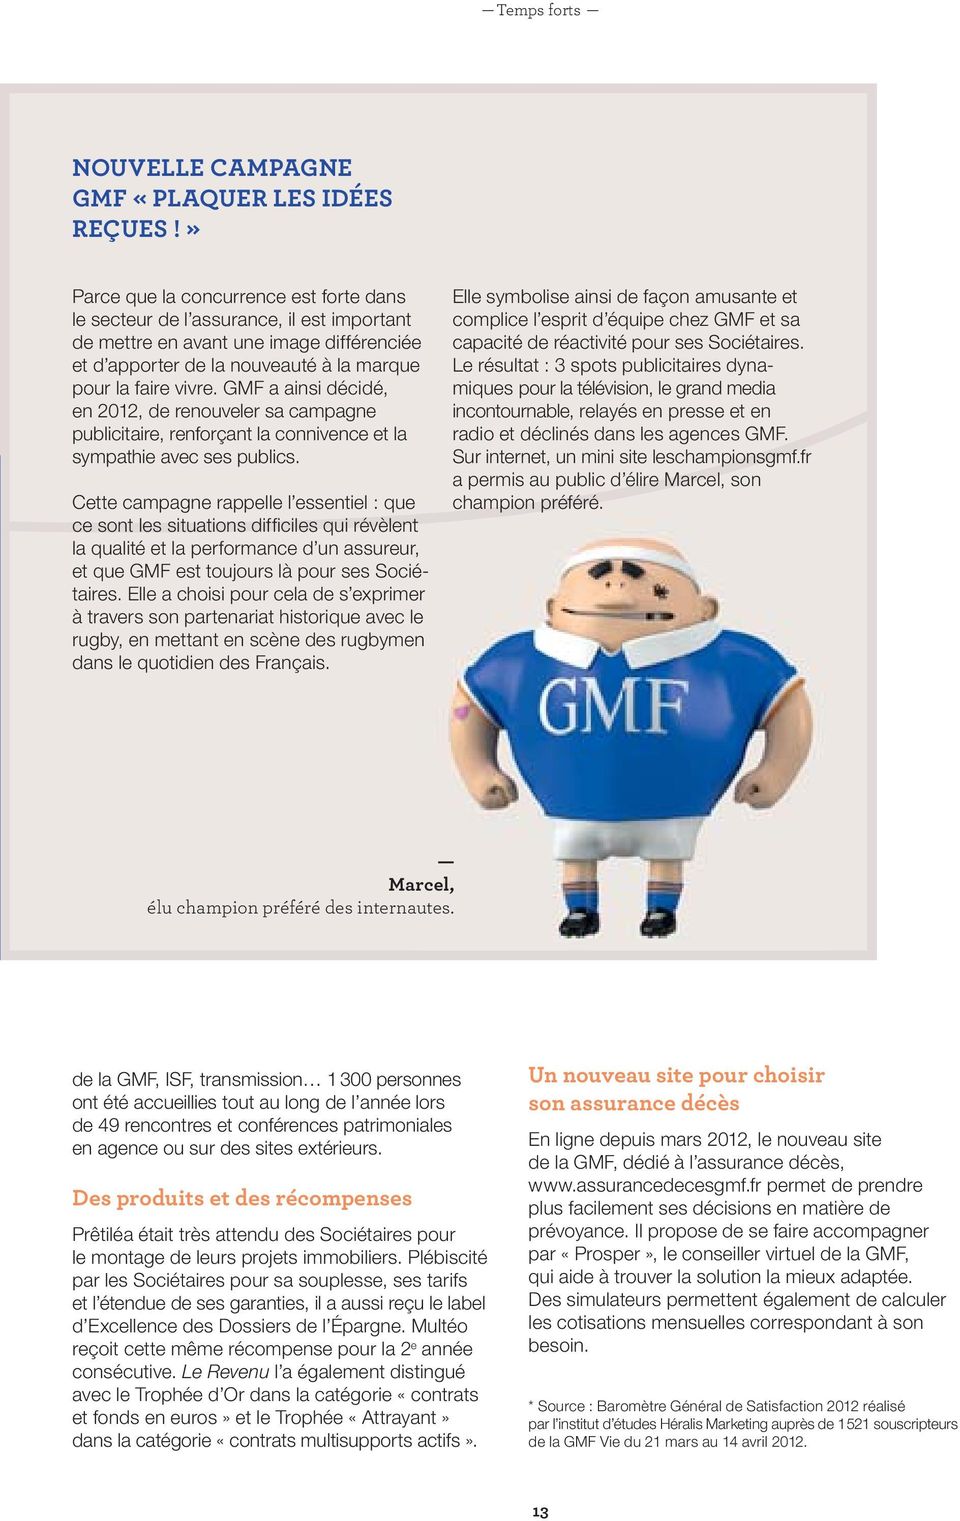 GMF a ainsi décidé, en 2012, de renouveler sa campagne publicitaire, renforçant la connivence et la sympathie avec ses publics.